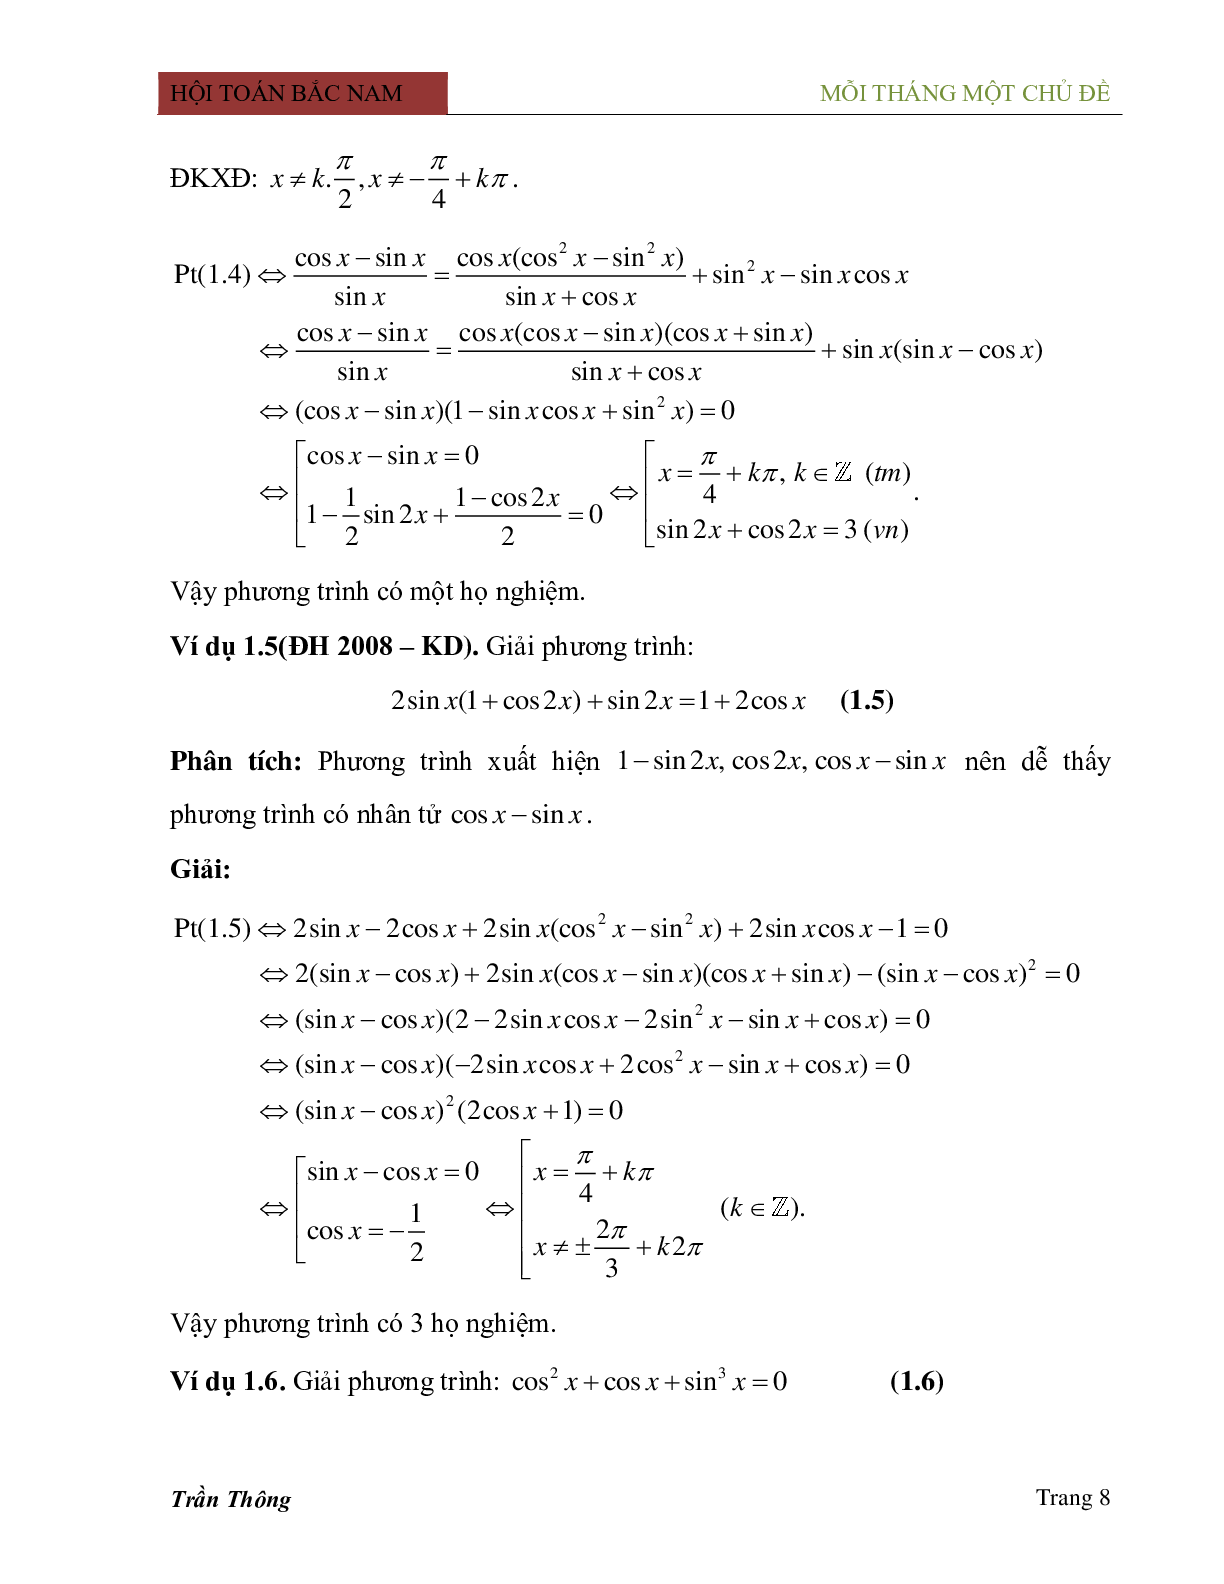 Phương pháp phân tích thành nhân tử trong việc giải phương trình lượng giác (trang 8)